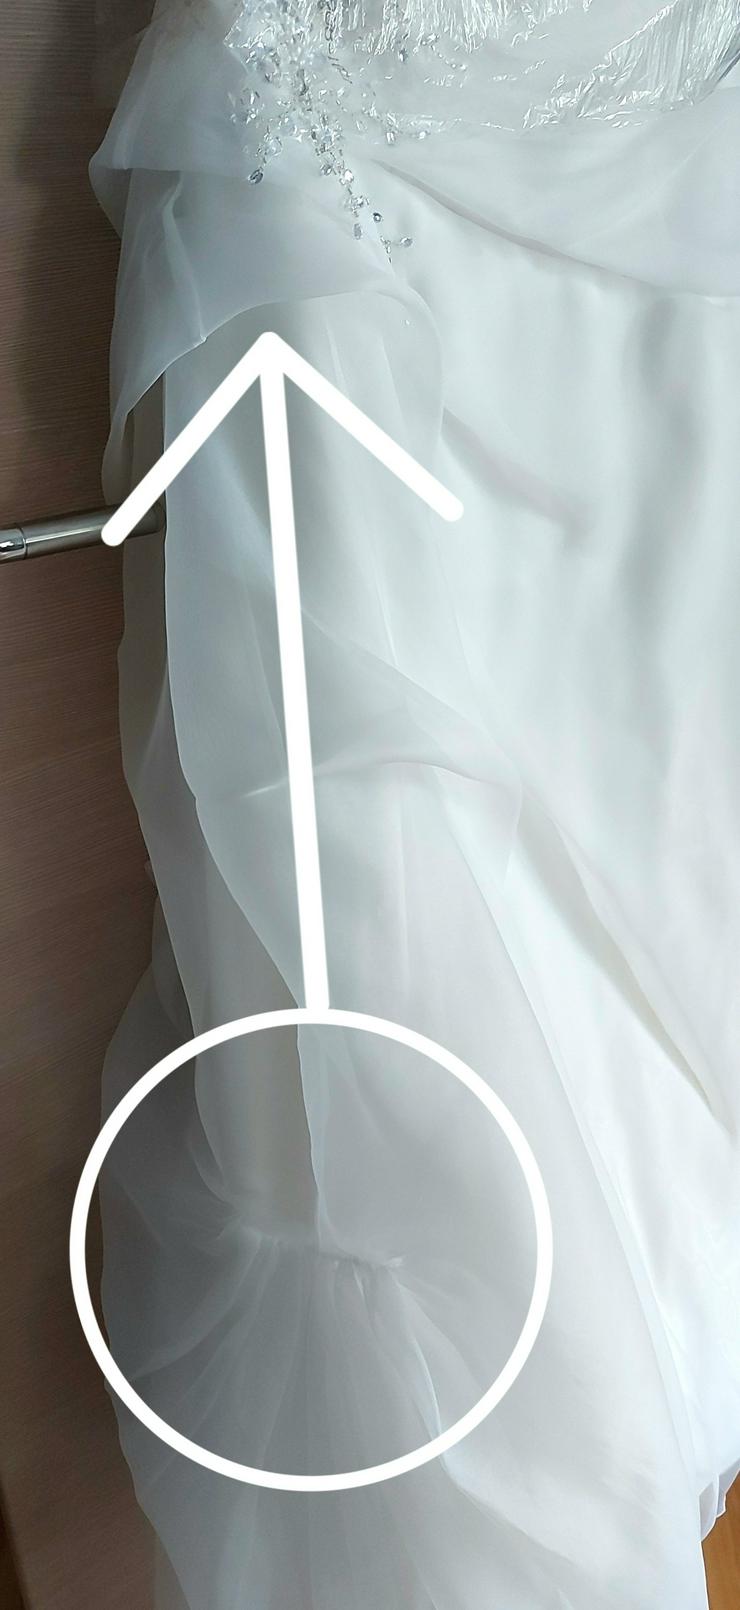 Brautkleid Creme weiß Gr. 44 46 inkl. Reifrock frisch gereinigt - Größen 44-46 / L - Bild 5